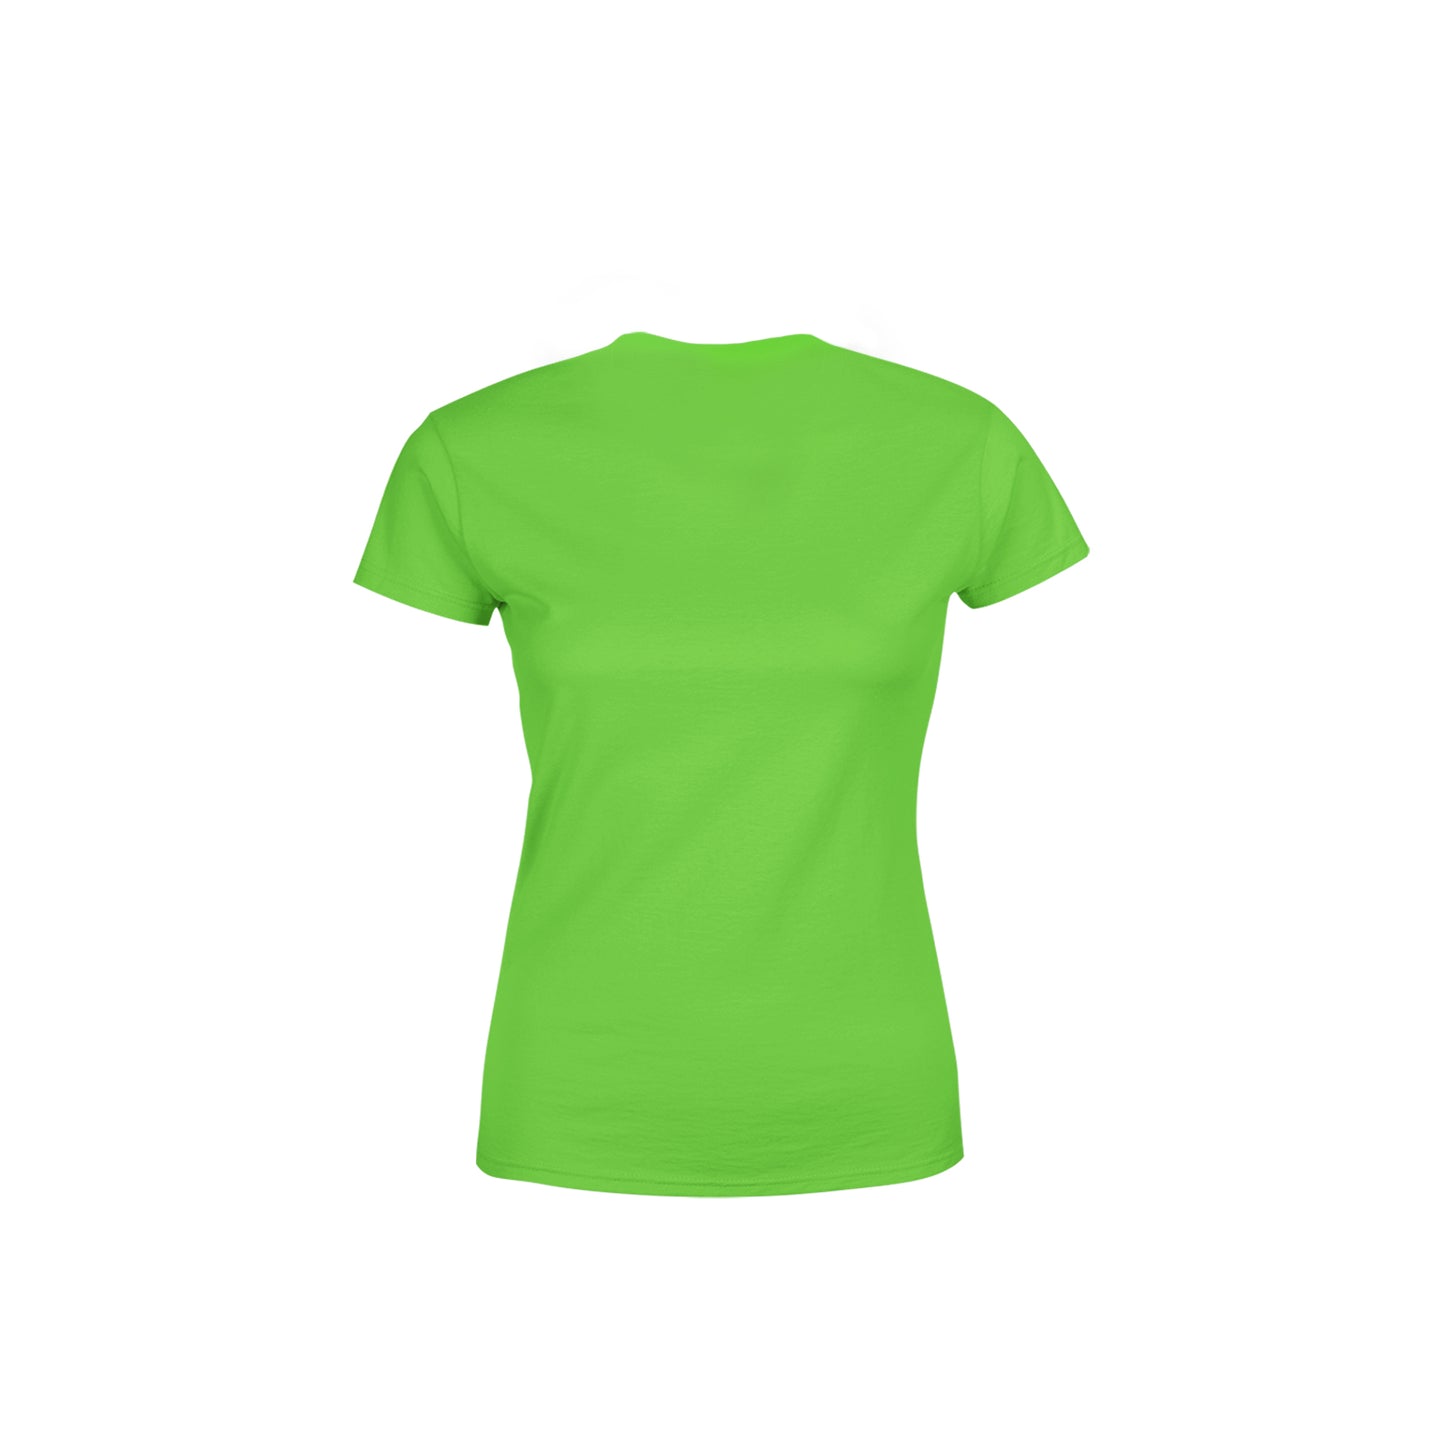 13 Number Women's T-Shirt (Liril Green)